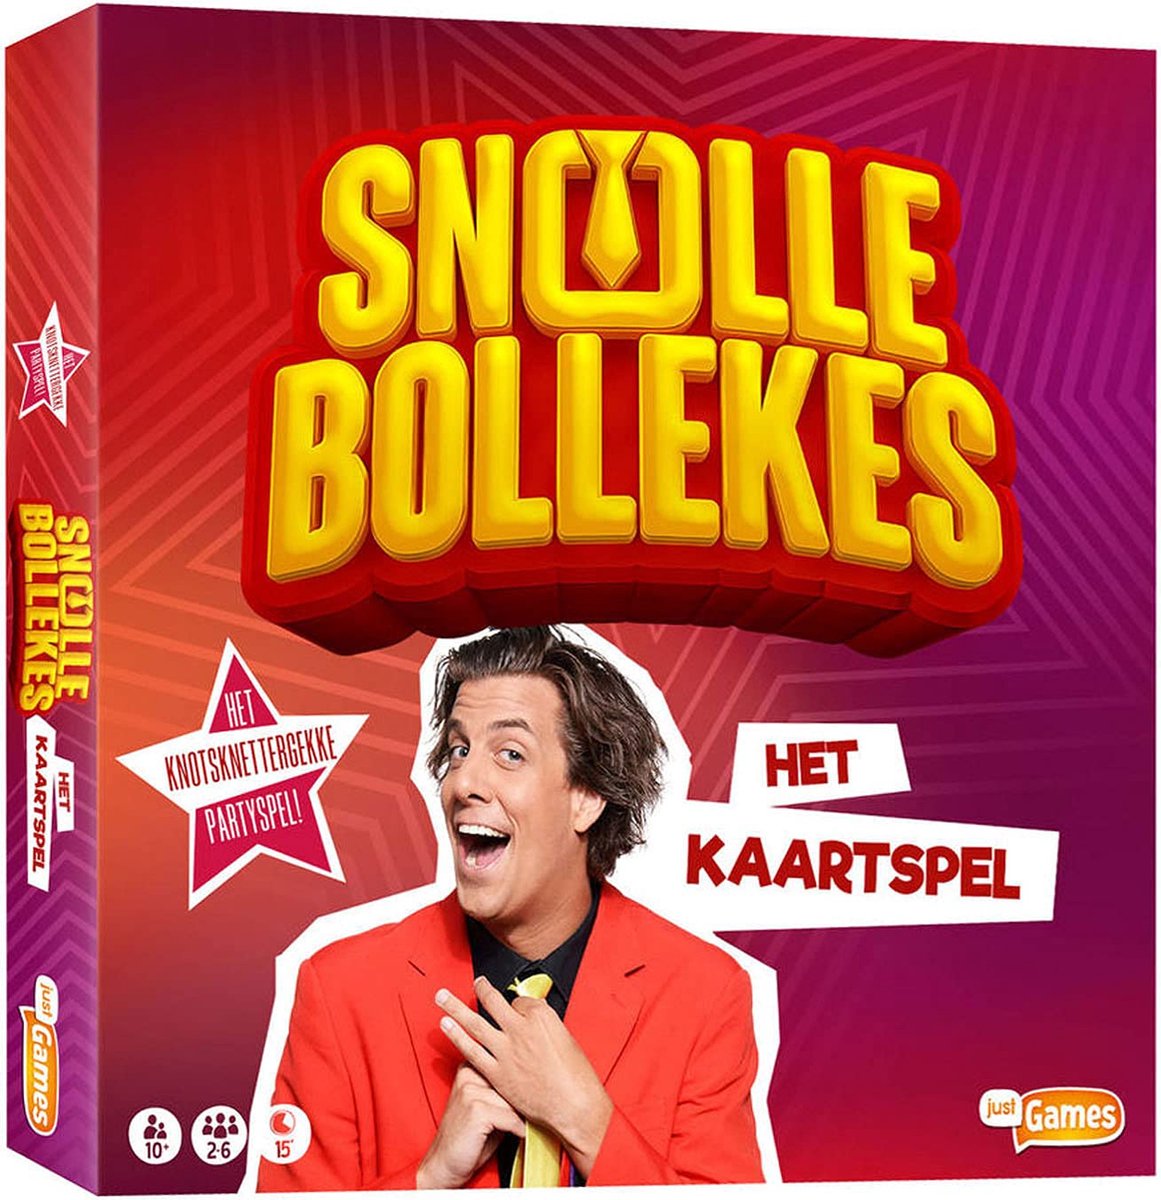 Snollebollekes: het kaartspel - Partyspel / kaartspel | Games | bol